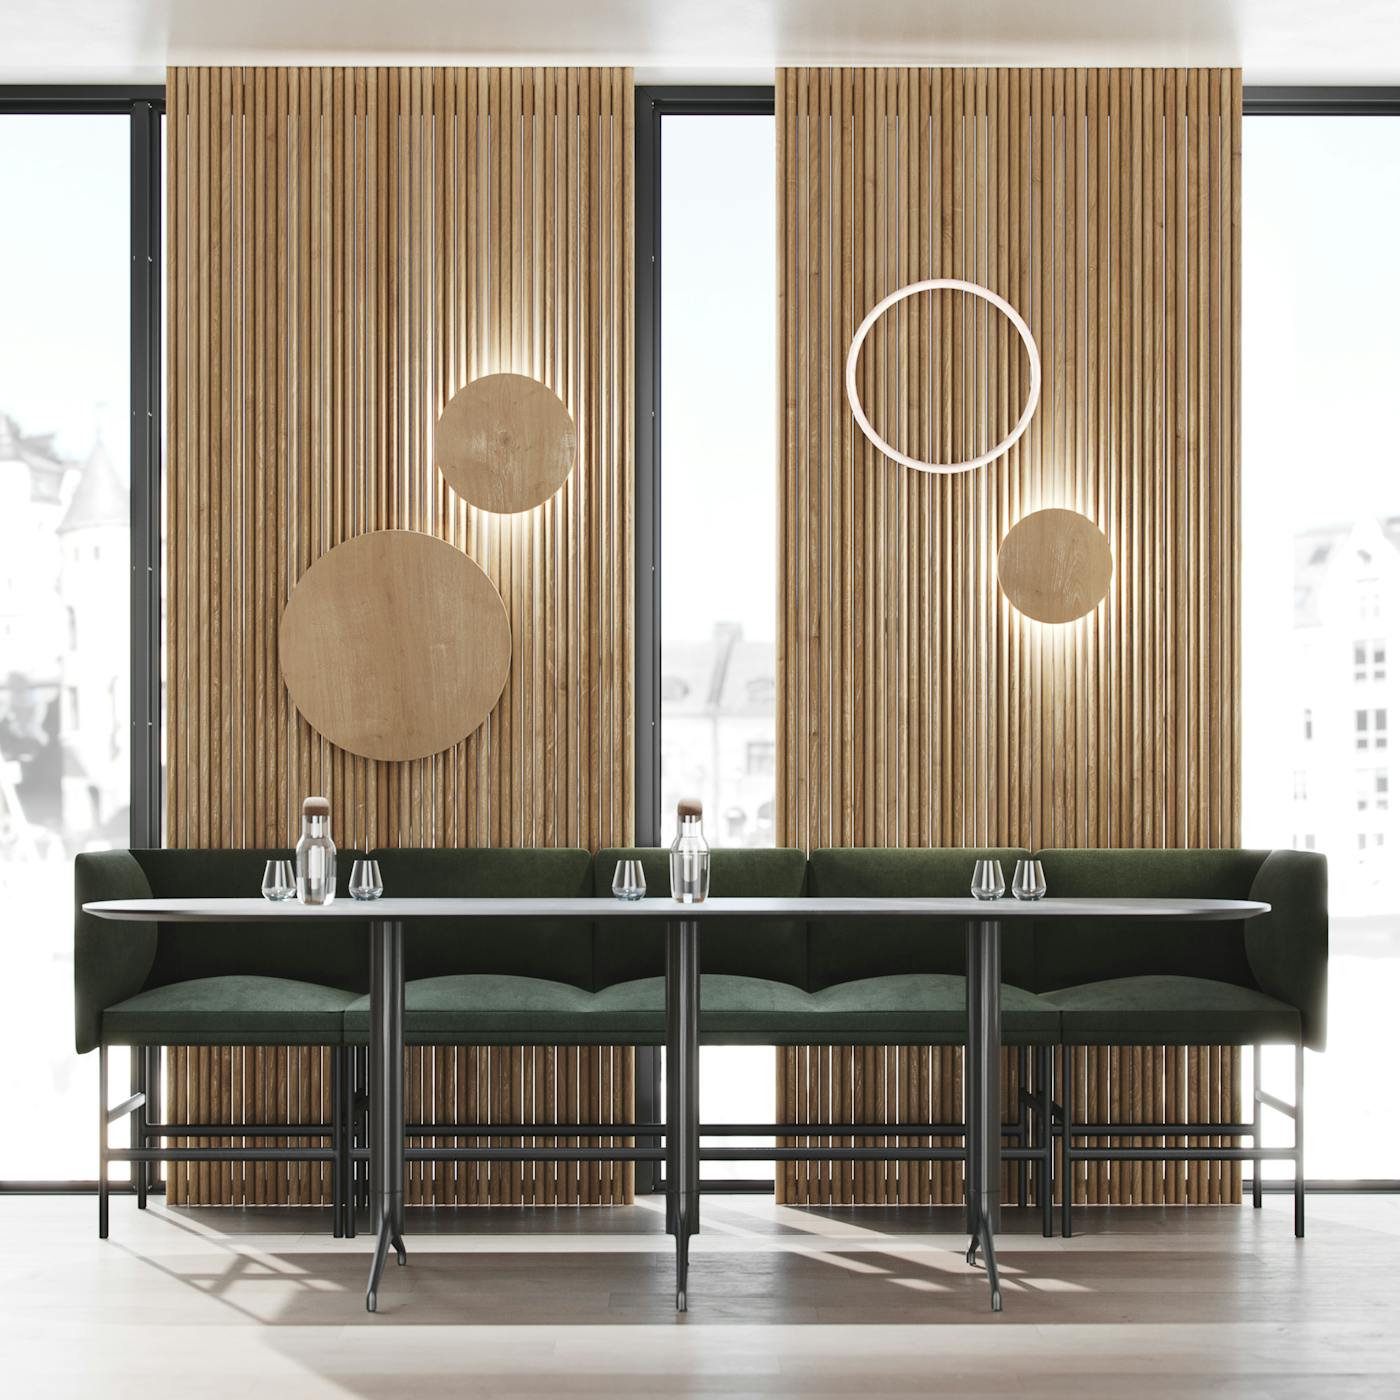 Senso barsofa sammen med et høyt Kvart bord i en restaurant fra Fora Form